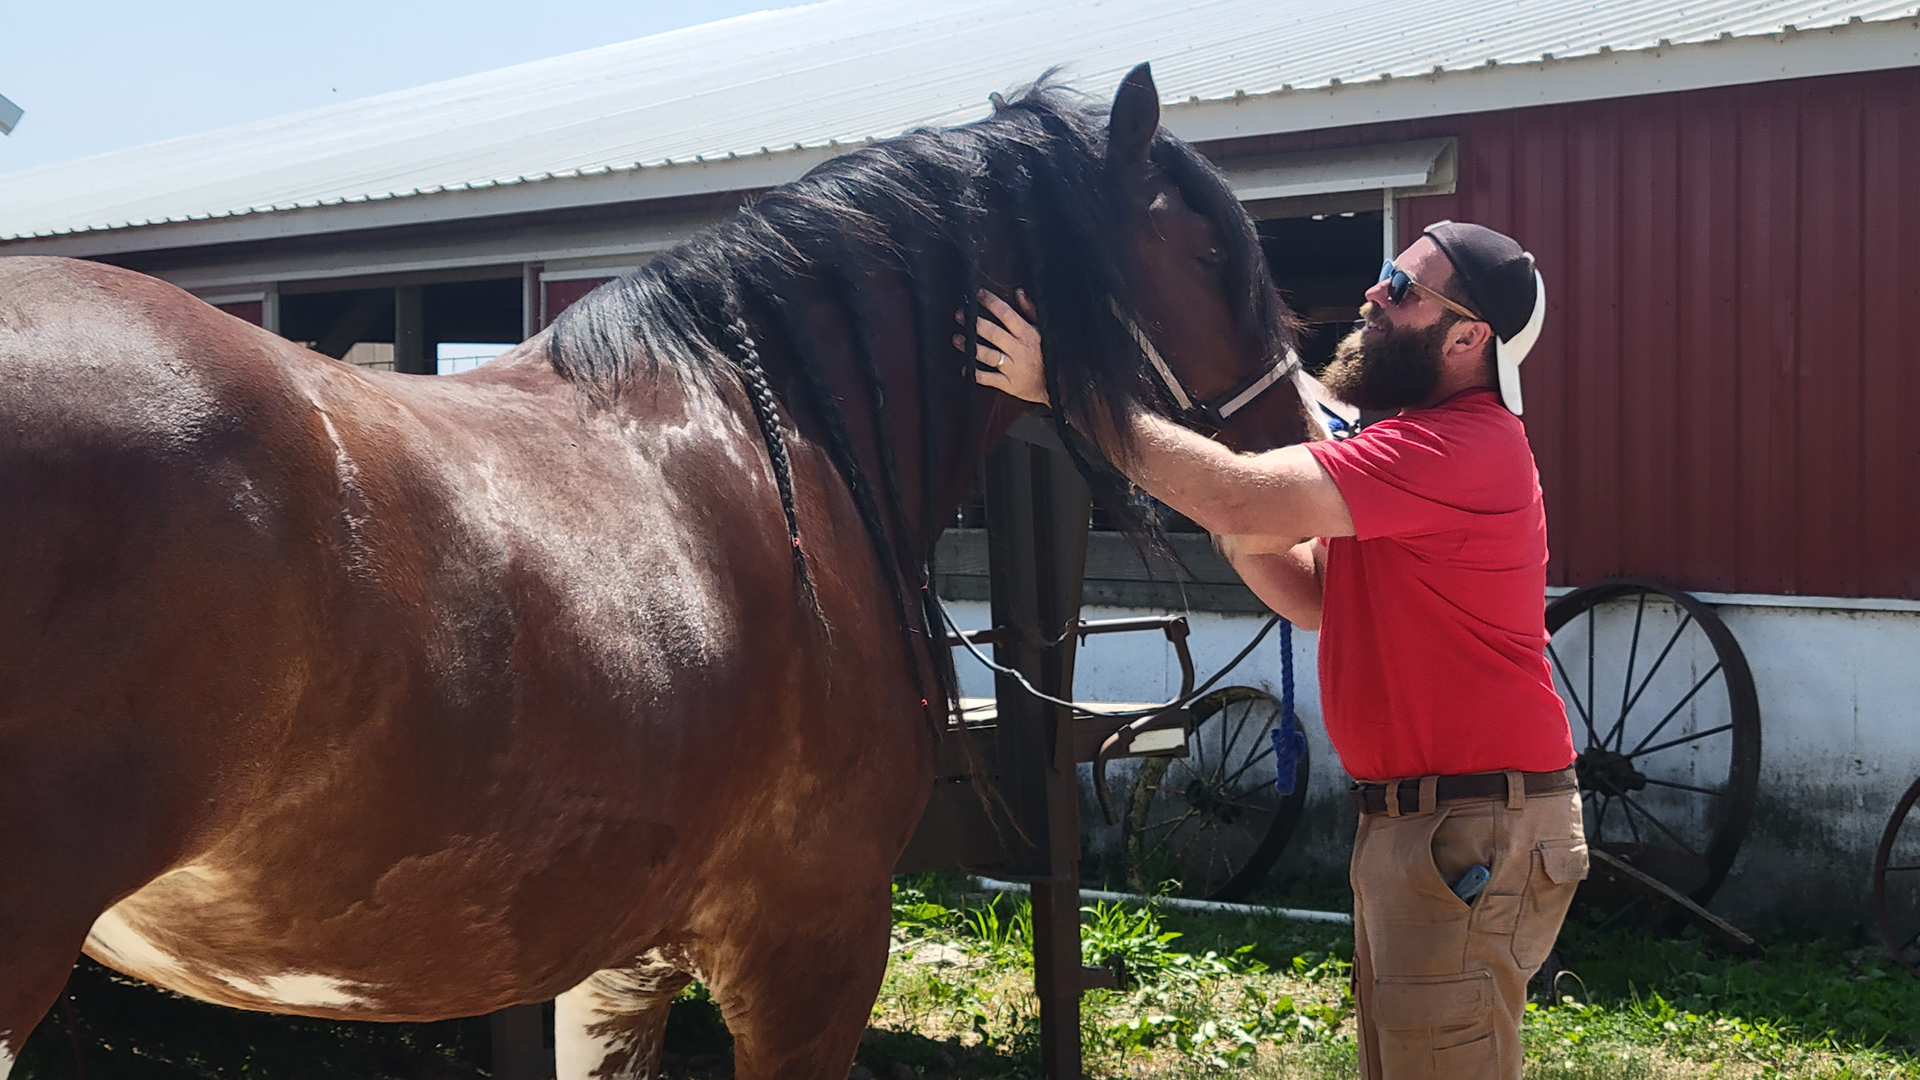 Farmer Dan Wegmueller prepares a brown horse for a horseback ride at his dairy farm.